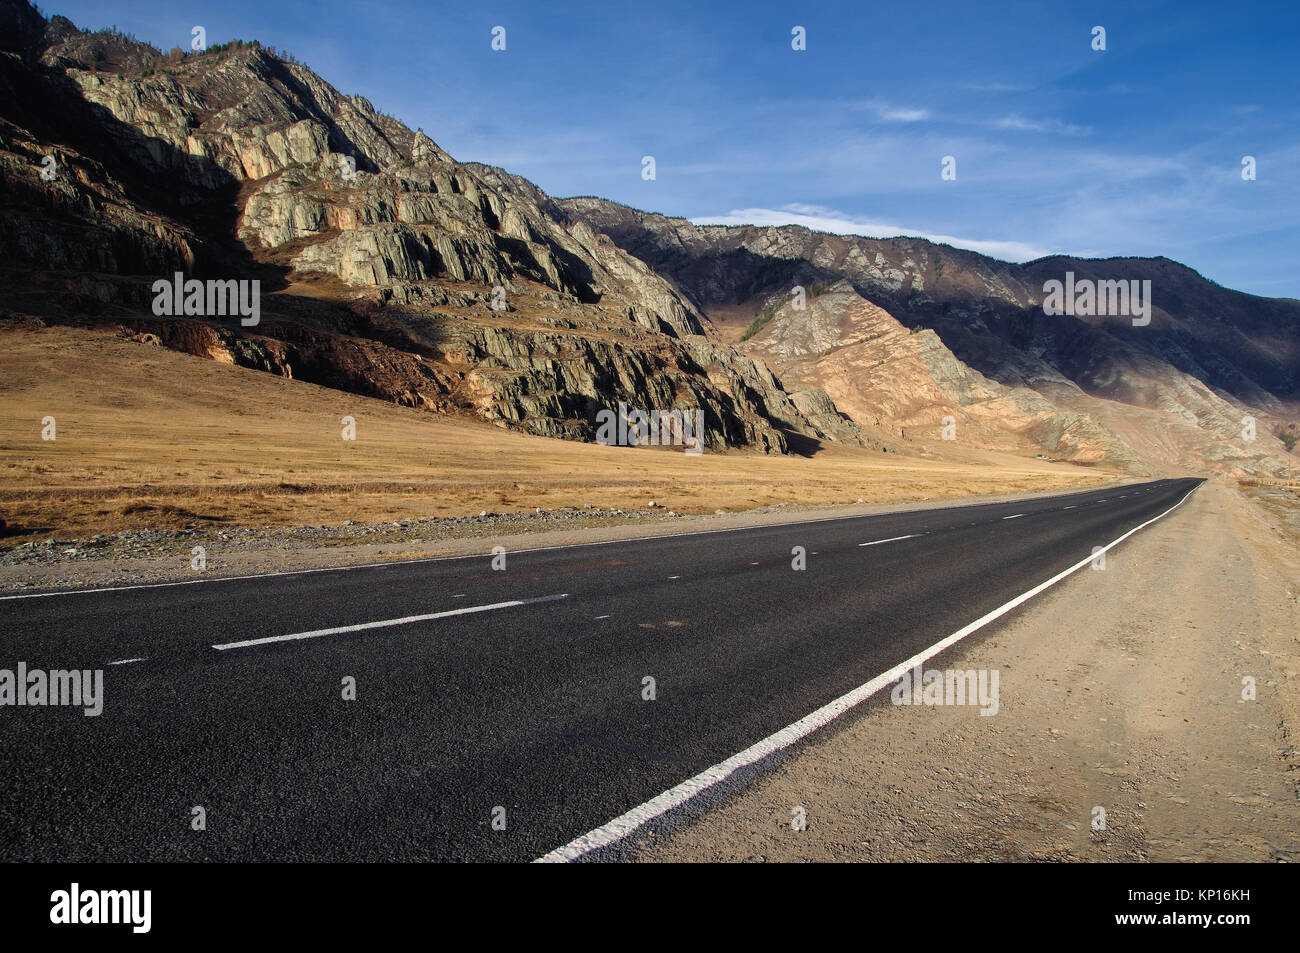 Asfalto stradale percorso su un deserto wild mountain valley giallo erba secca sullo sfondo delle gamme alta sotto un cielo blu Chuysky tratto Altai Mountain Foto Stock